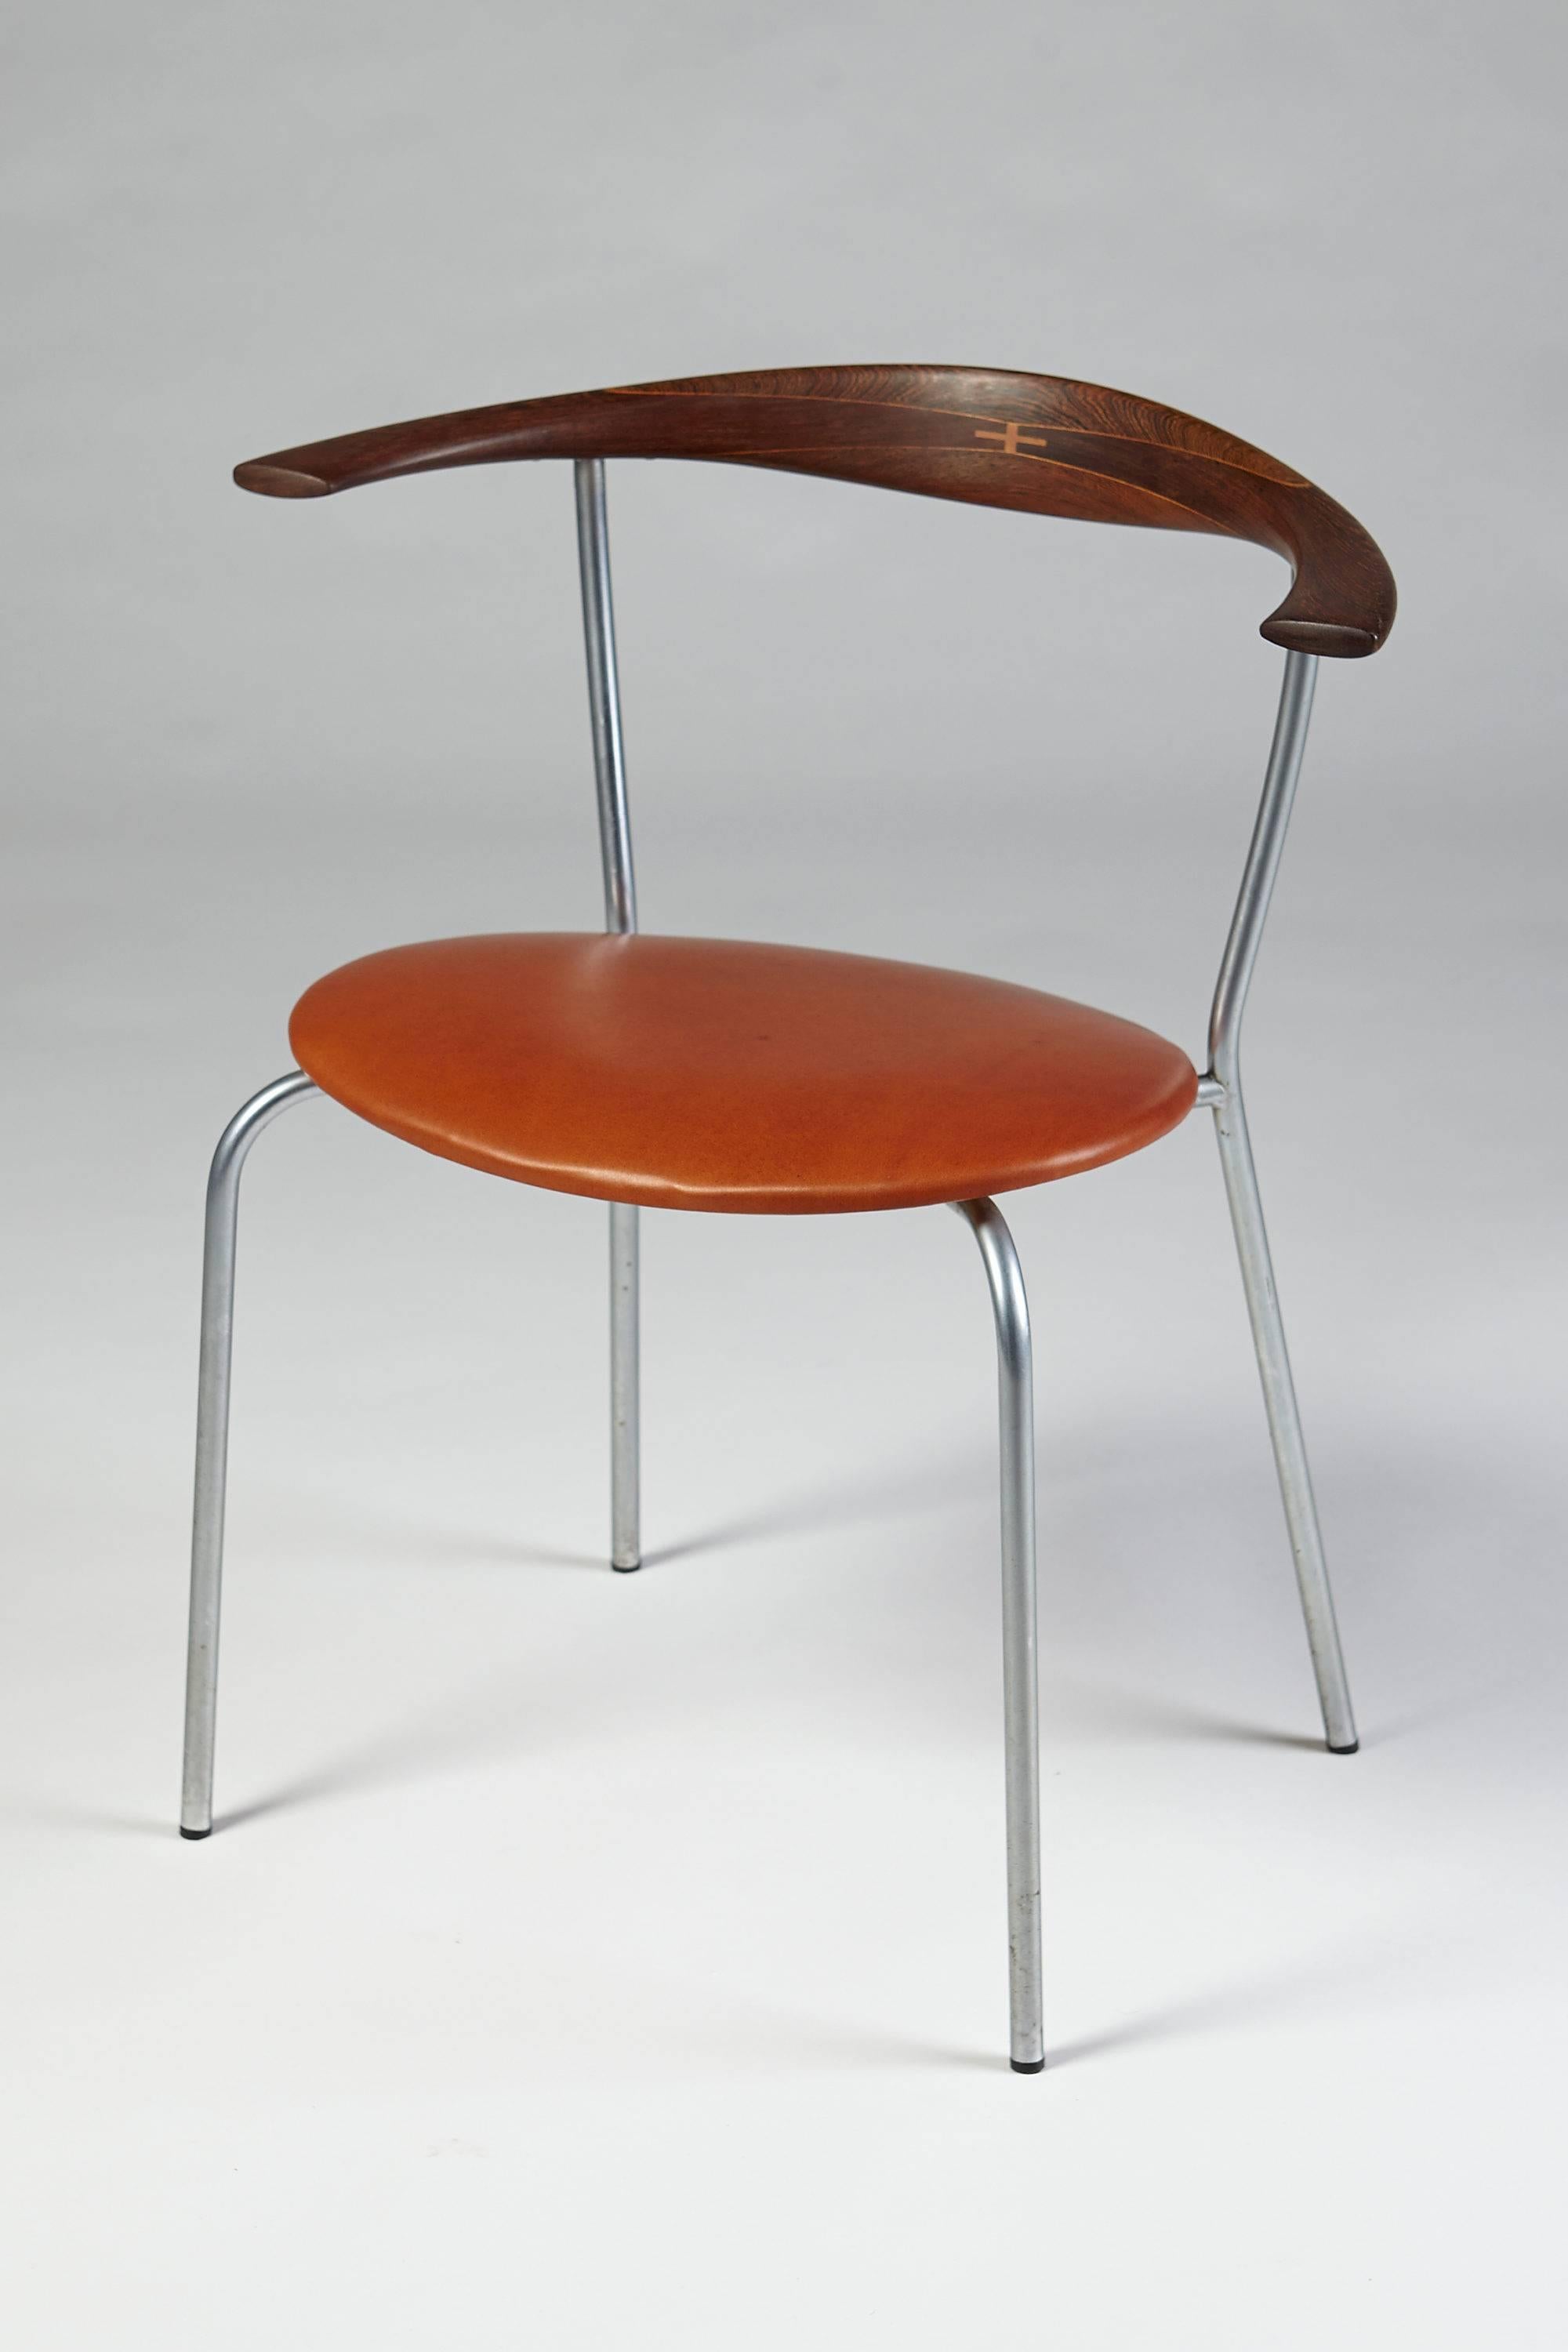 Scandinavian Modern Dining chairs designed by Hans Wegner for Johannes Hansen, Denmark, 1960s